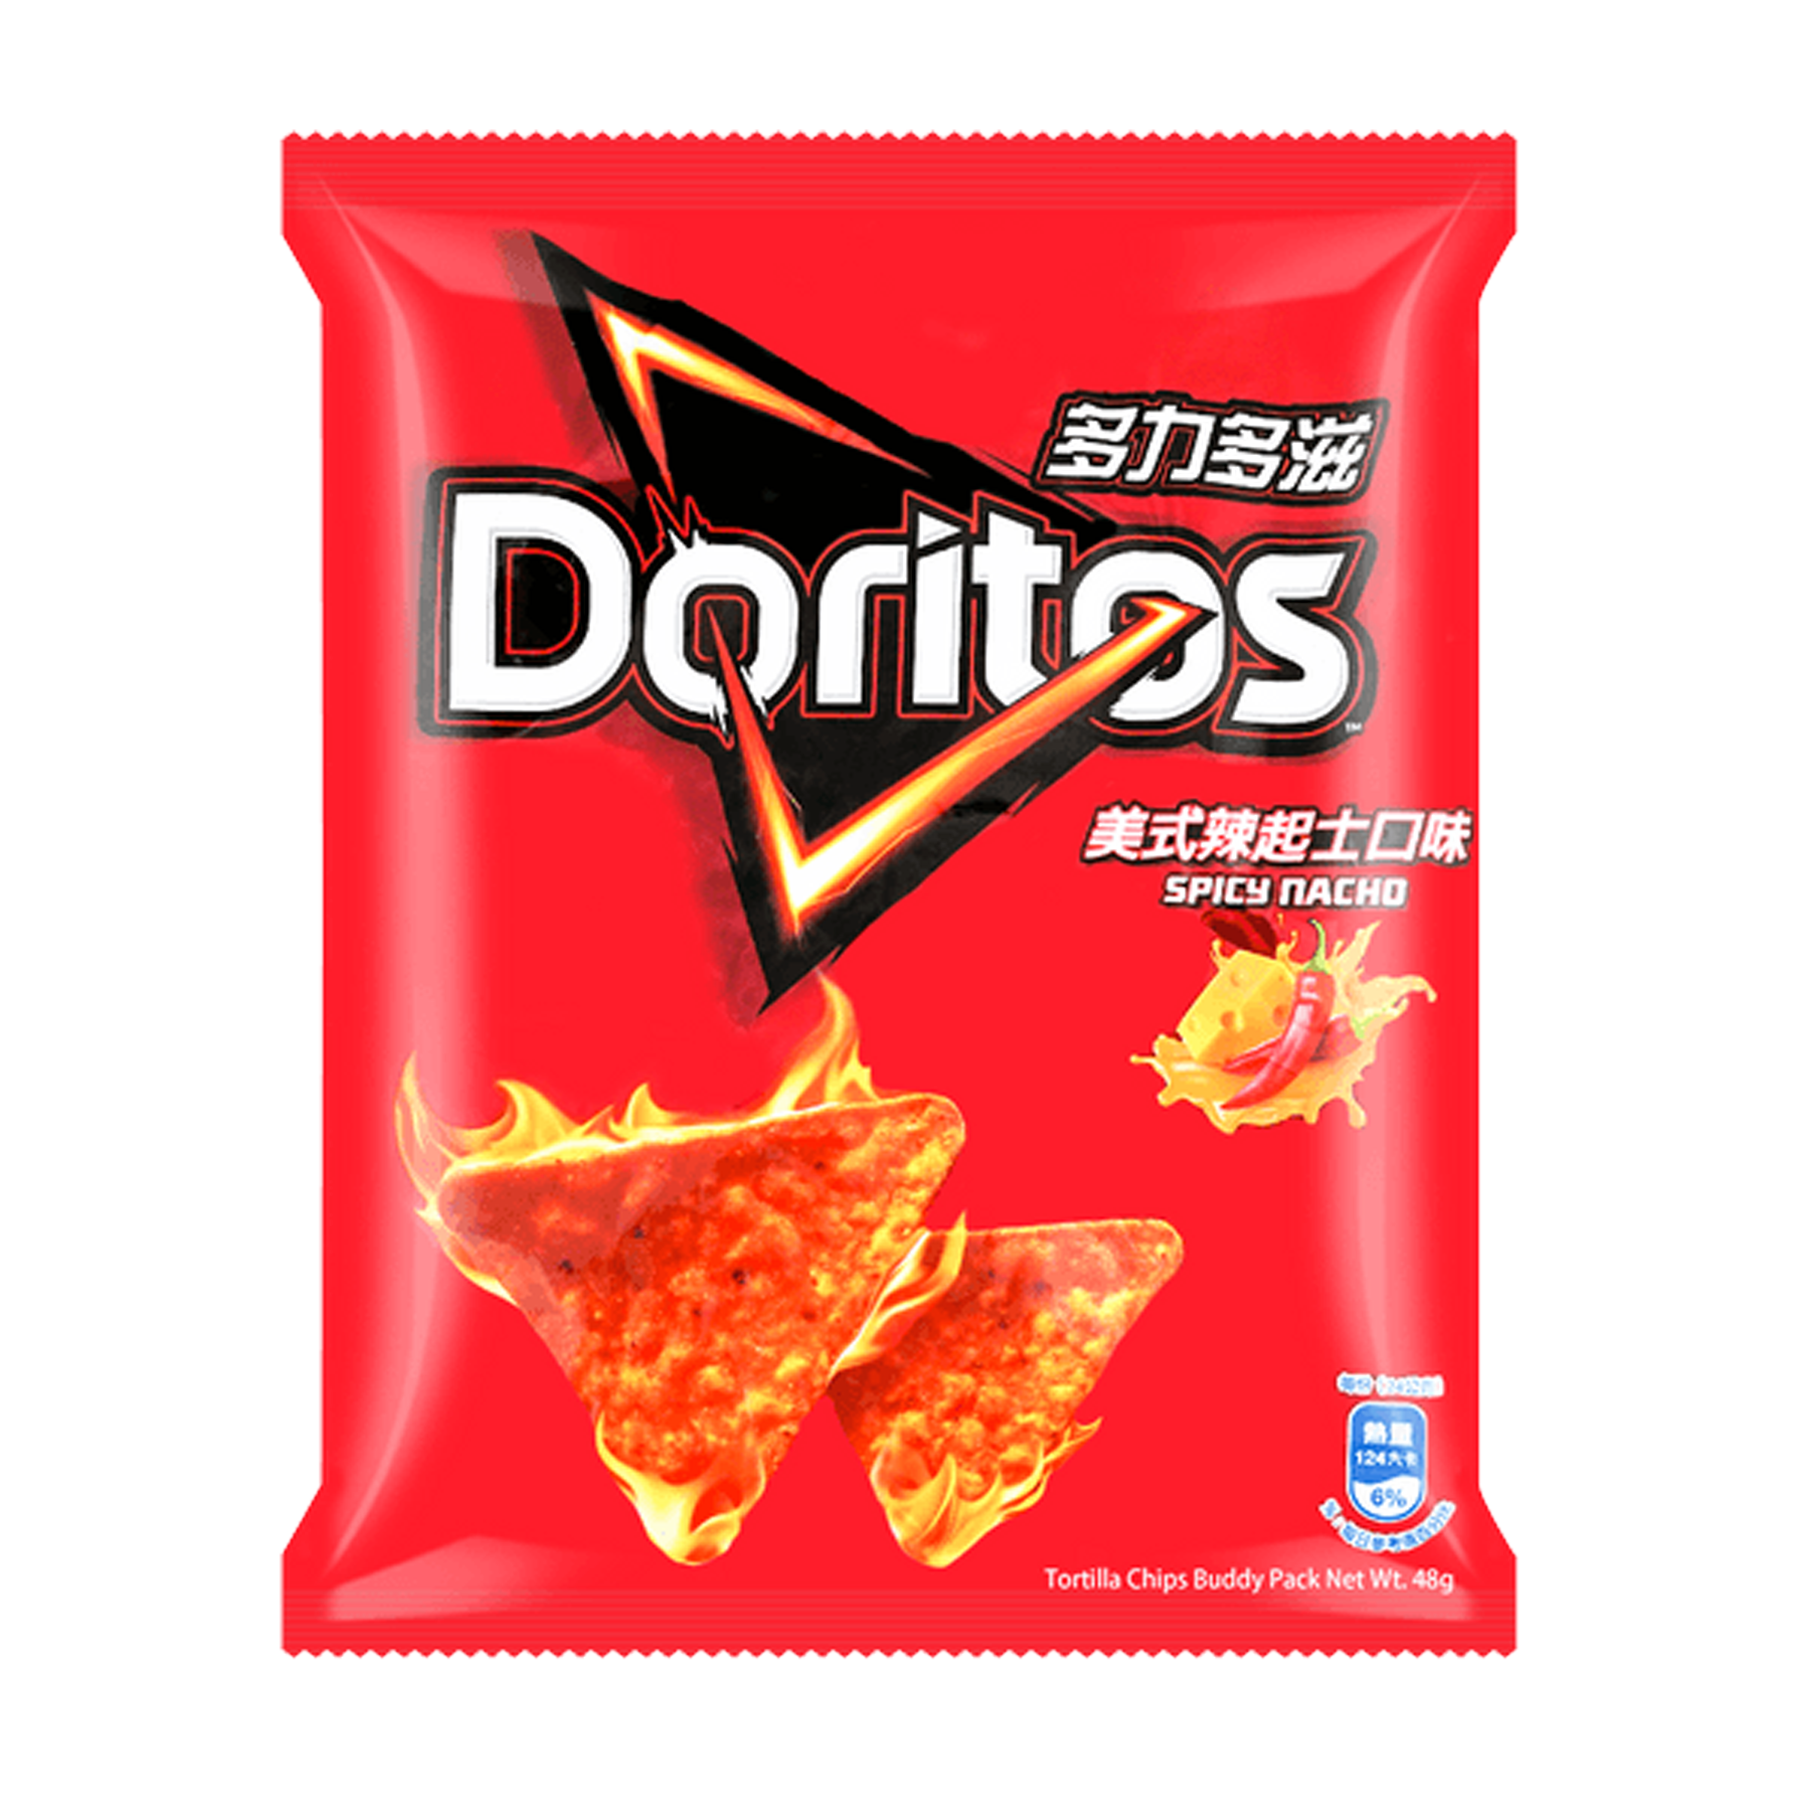 Doritos Spicy Nacho Flavored Chips